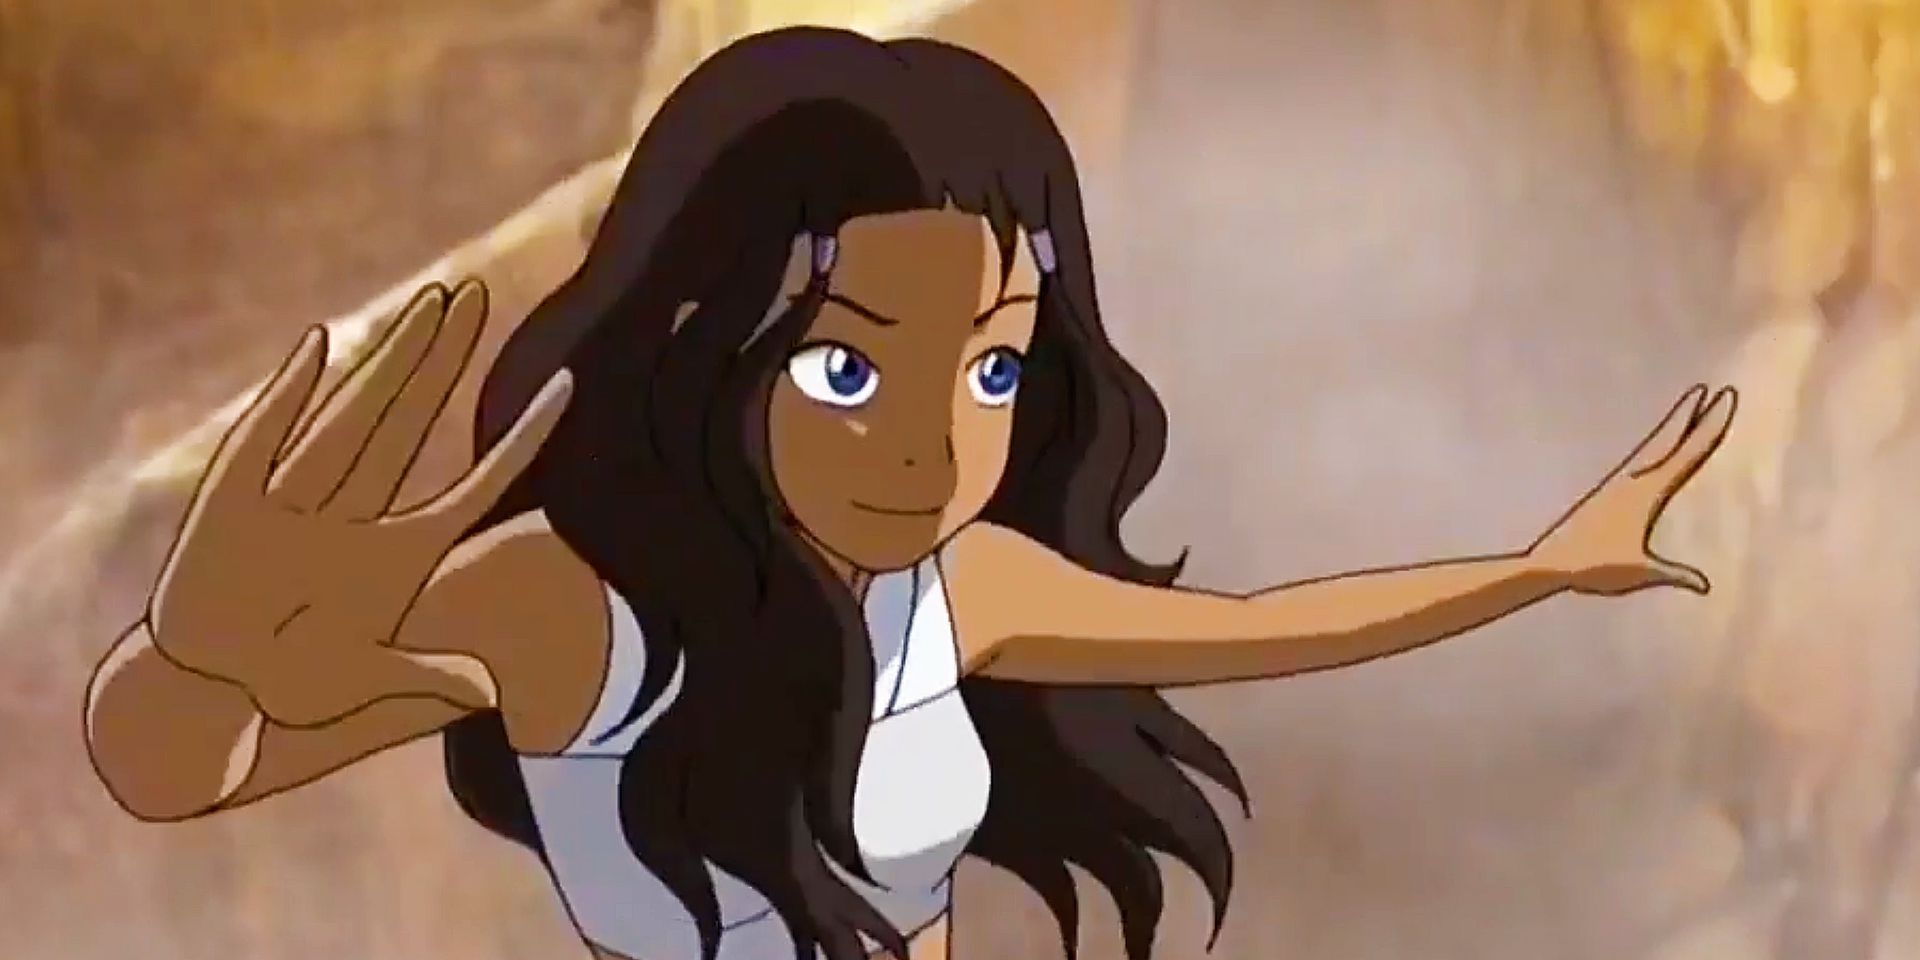 Katara waves her hands in the air preparing to waterbend in Avatar: The Last Airbender.